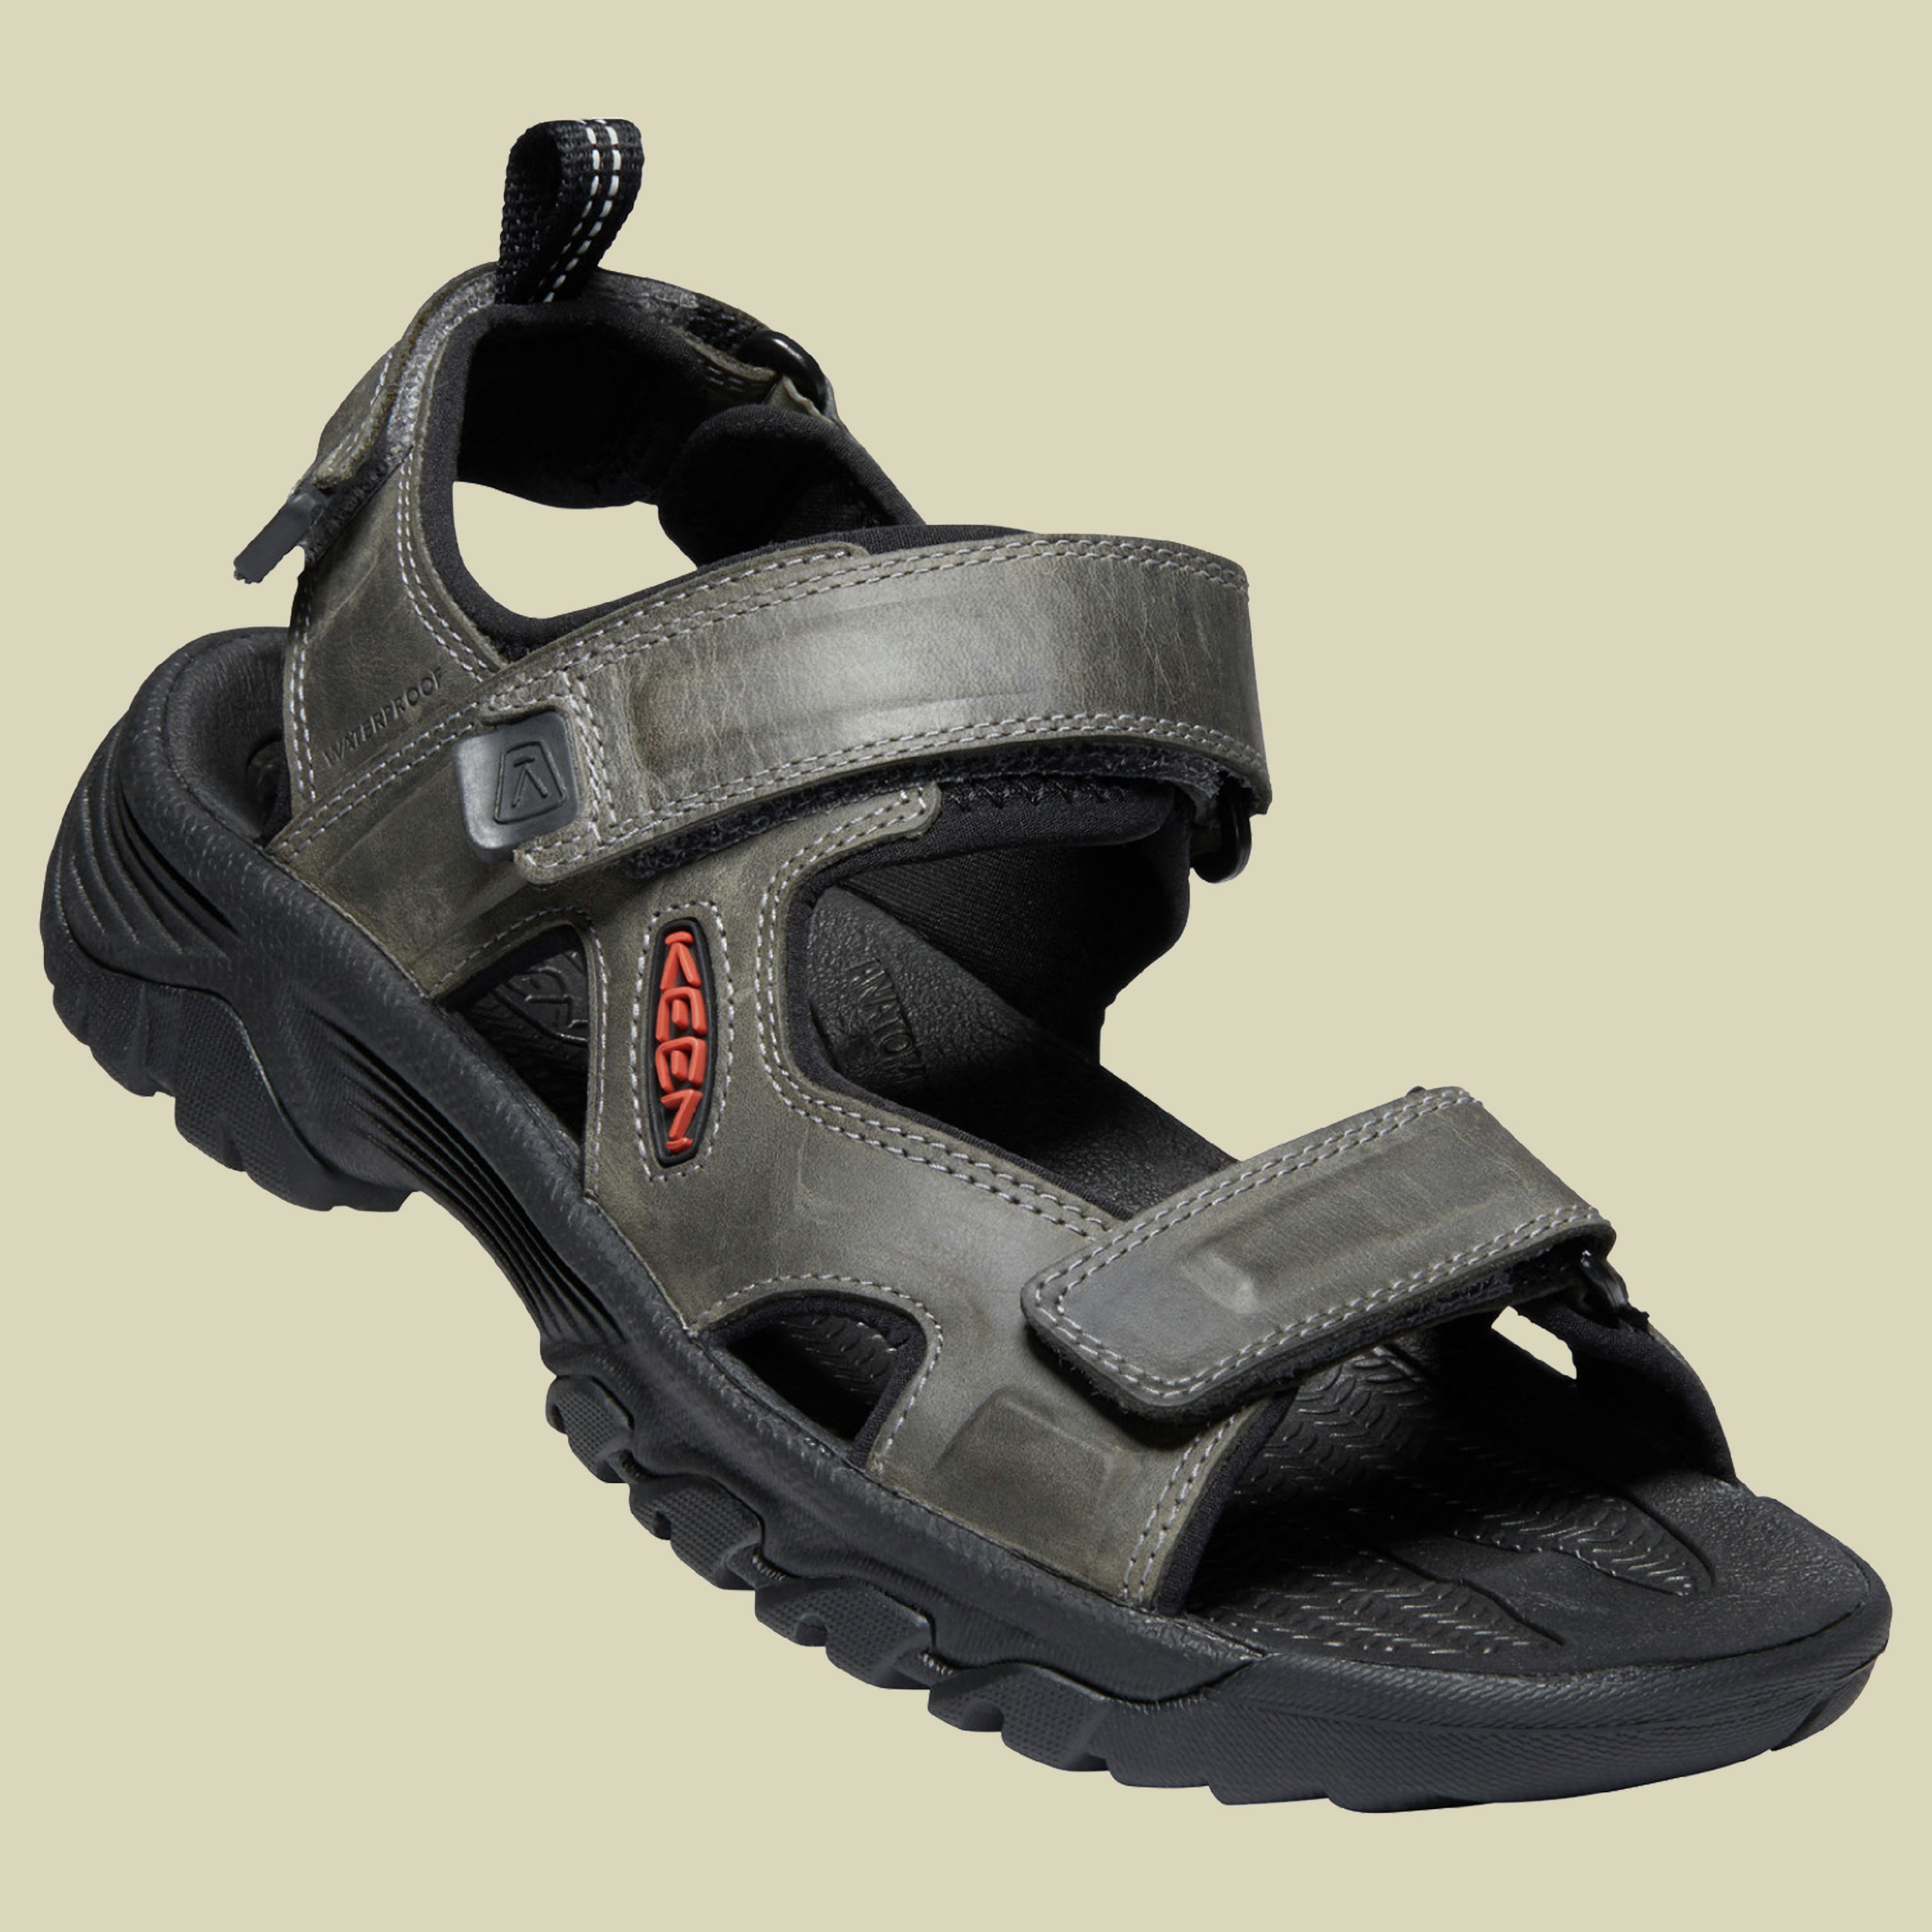 Targhee III Open Toe Sandal Men Größe UK 8,5 Farbe grey/black